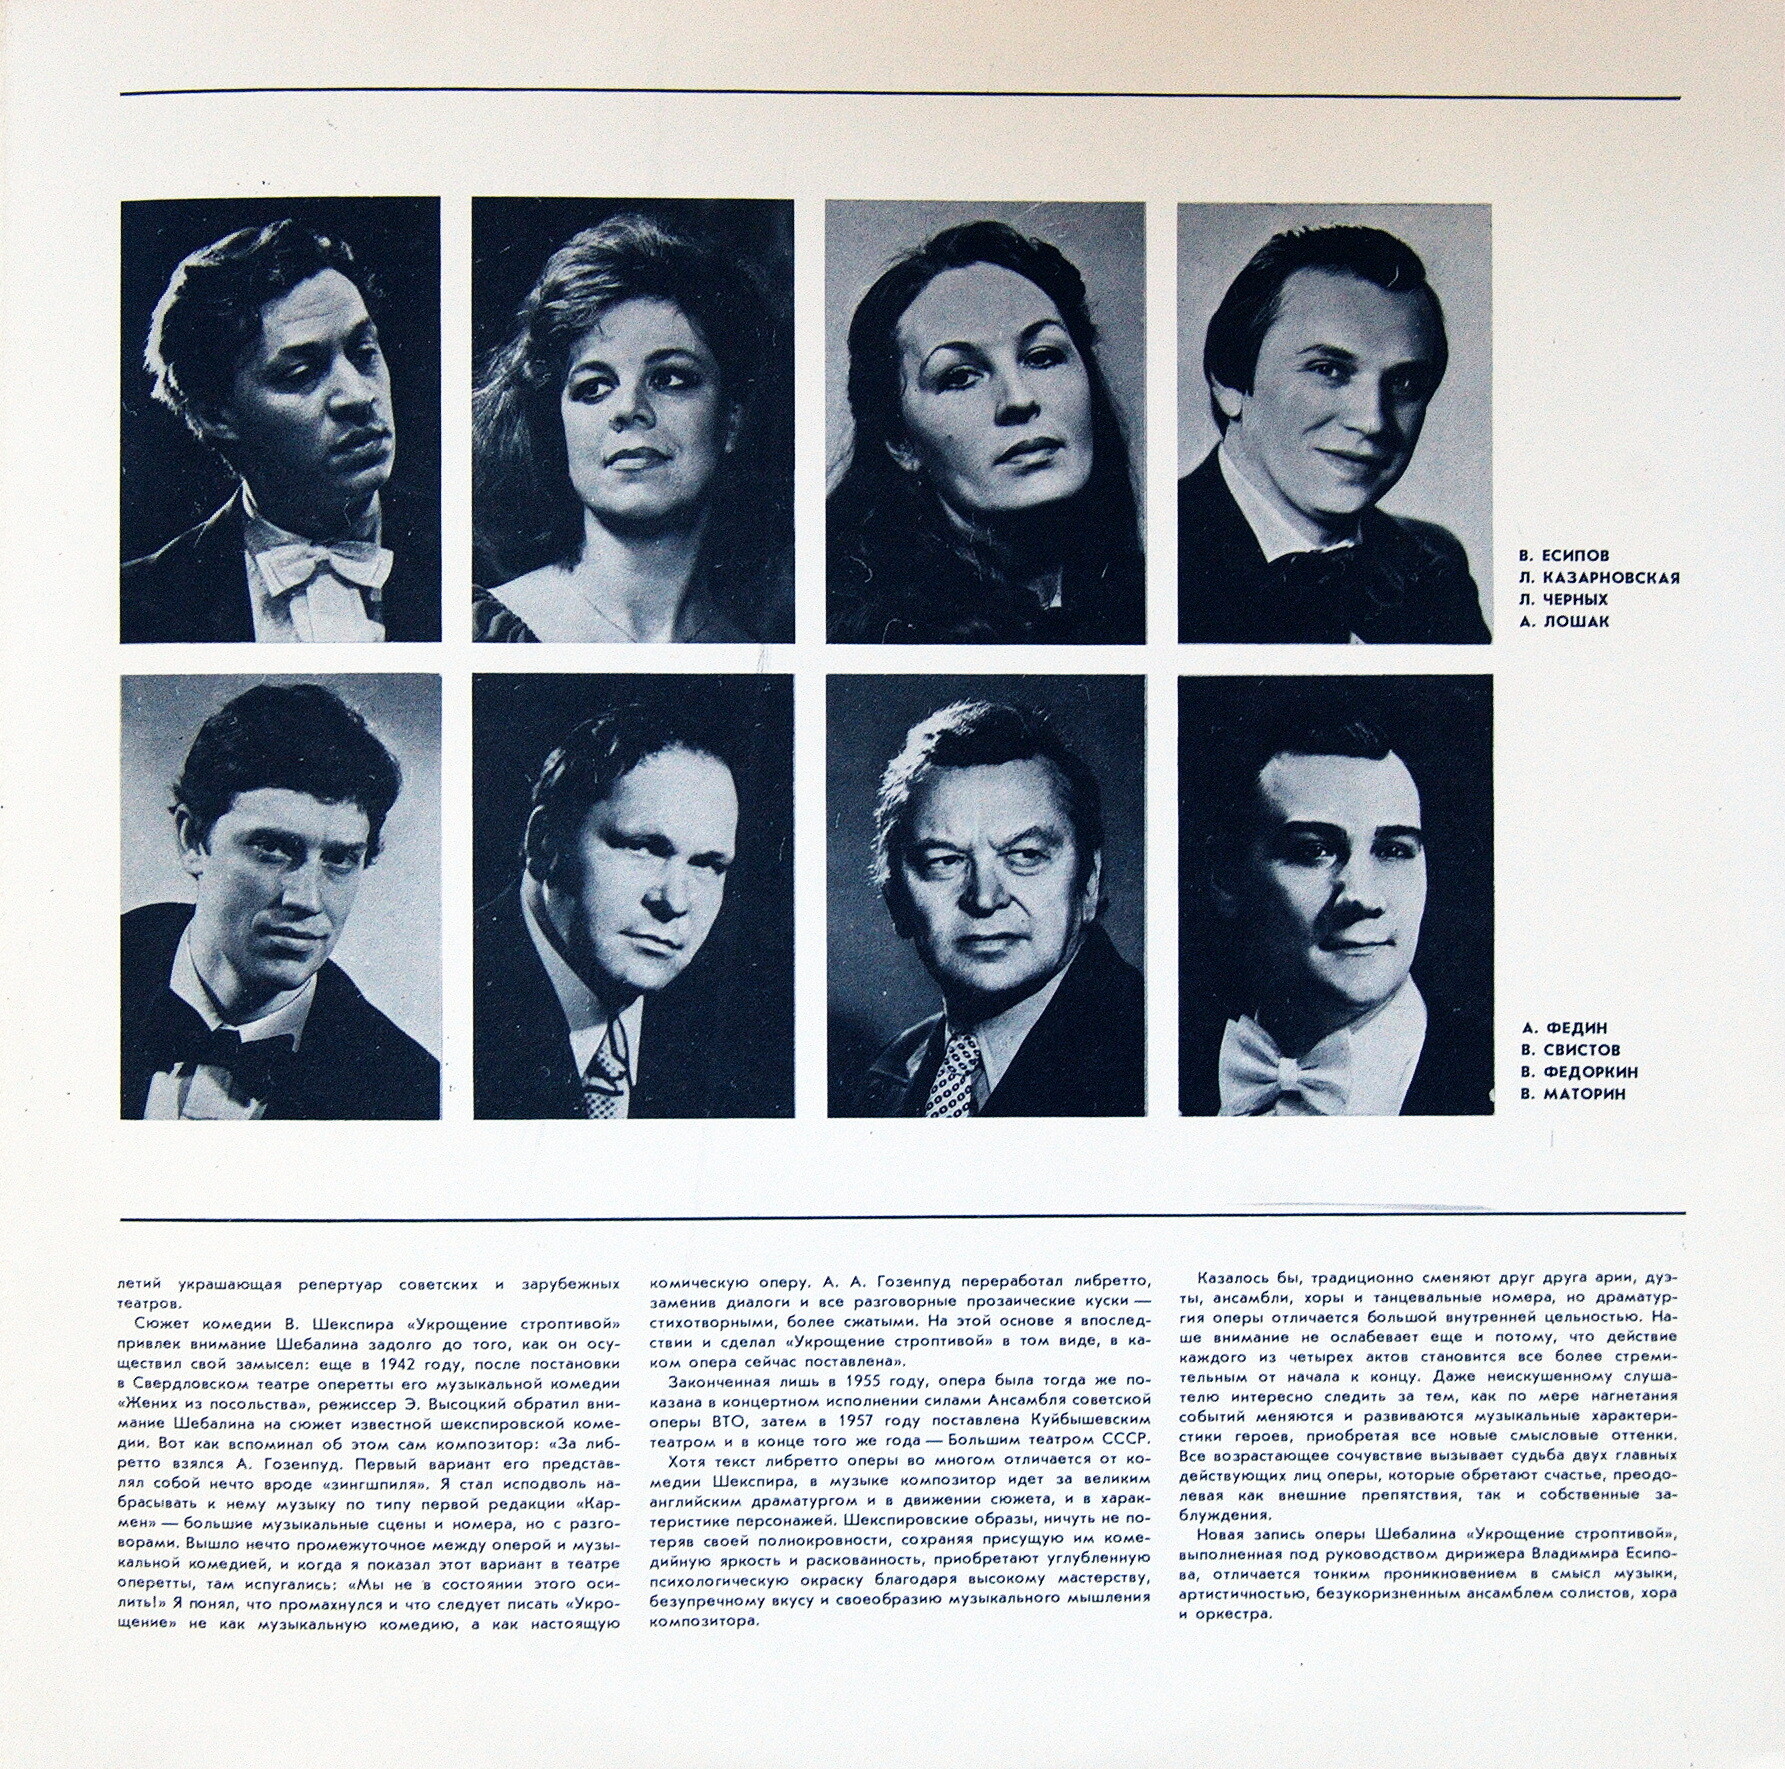 В. ШЕБАЛИН (1902-1963): «Укрощение строптивой», опера в четырех действиях, соч. 46